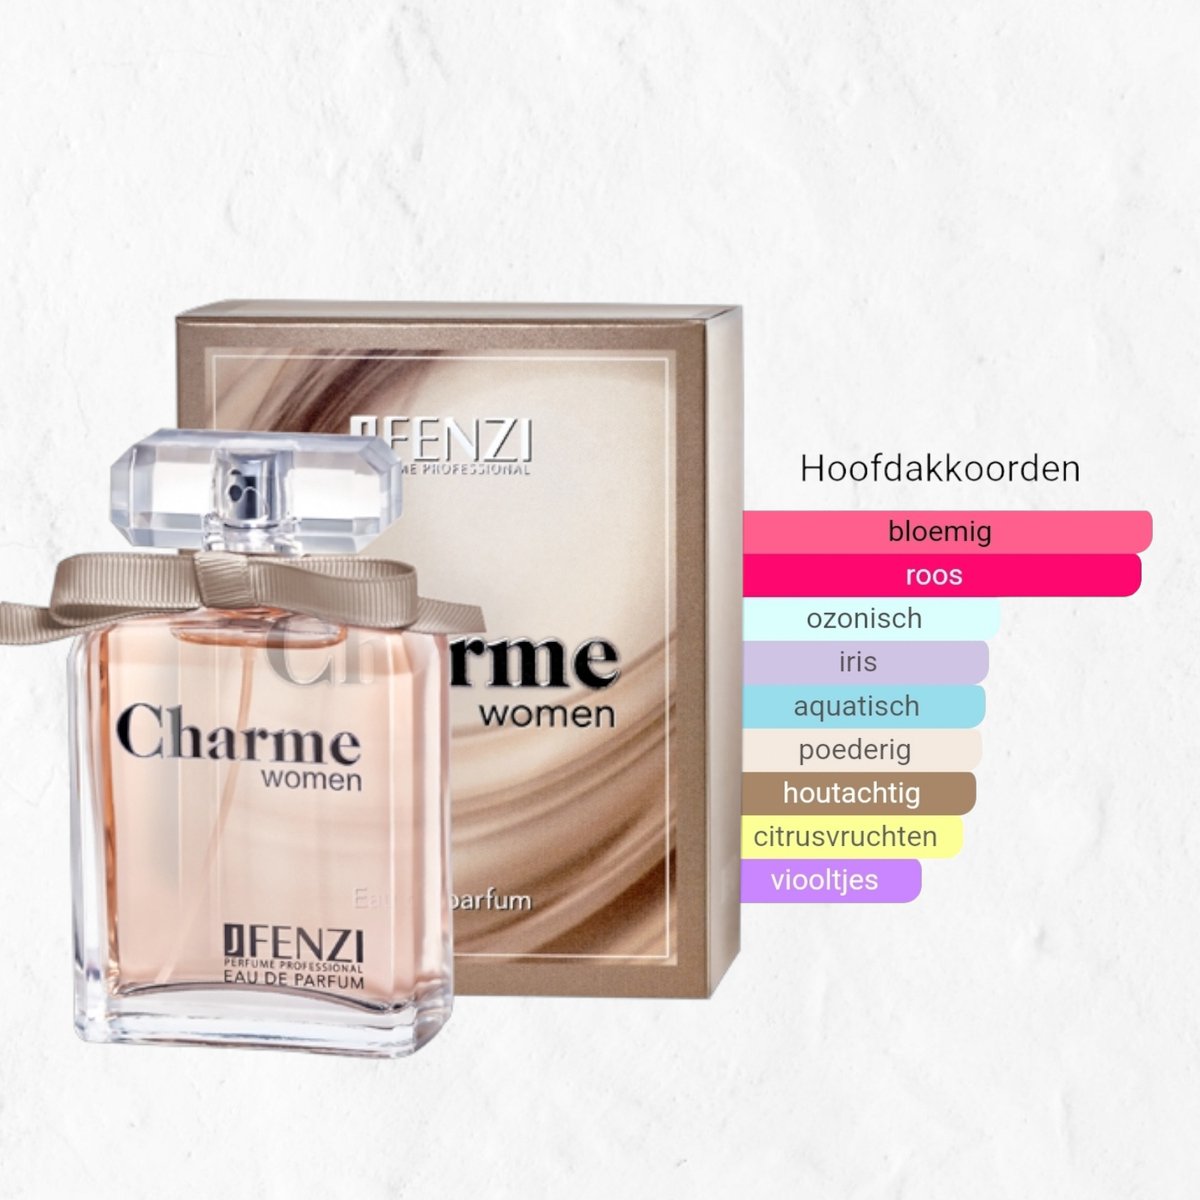 Merk geuren voor een eerlijke prijs - JFenzi - Charme Women - Eau de parfum 80% - 100ml- ✮✮✮✮✮ Bedankje juf